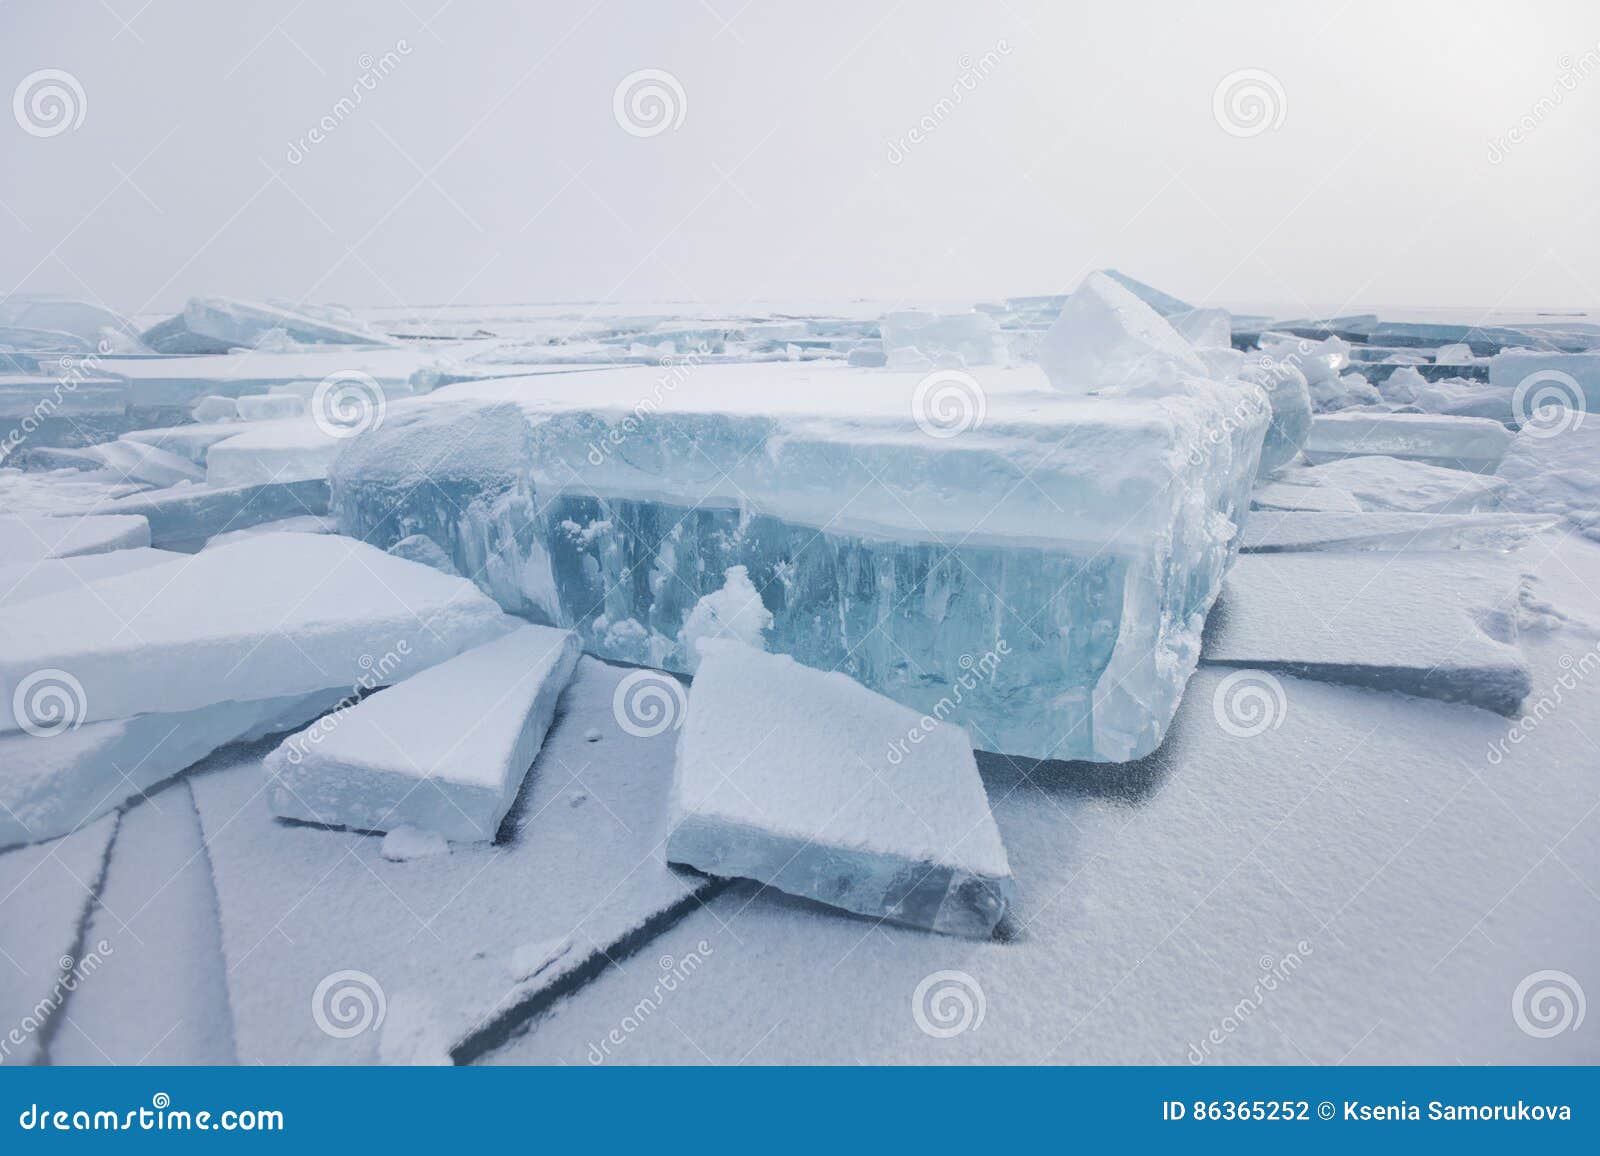 Звук треска льда. Ледяное поле. Голубые льдины Байкала. Озеро Байкал ледяные шатры. Байкал зимой льдины.